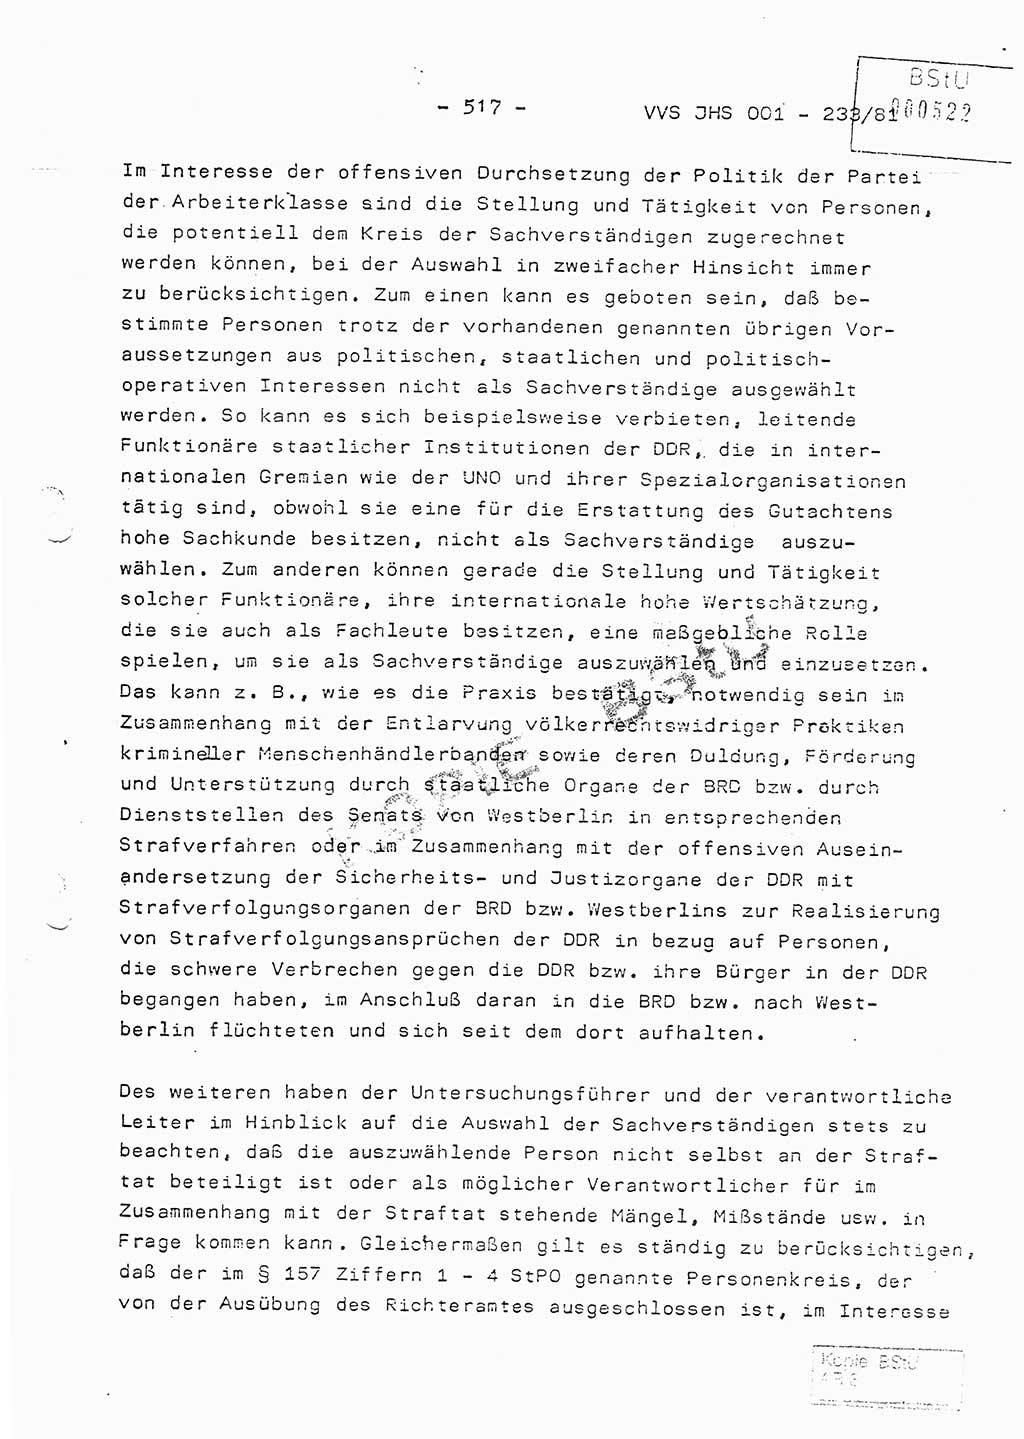 Dissertation Oberstleutnant Horst Zank (JHS), Oberstleutnant Dr. Karl-Heinz Knoblauch (JHS), Oberstleutnant Gustav-Adolf Kowalewski (HA Ⅸ), Oberstleutnant Wolfgang Plötner (HA Ⅸ), Ministerium für Staatssicherheit (MfS) [Deutsche Demokratische Republik (DDR)], Juristische Hochschule (JHS), Vertrauliche Verschlußsache (VVS) o001-233/81, Potsdam 1981, Blatt 517 (Diss. MfS DDR JHS VVS o001-233/81 1981, Bl. 517)